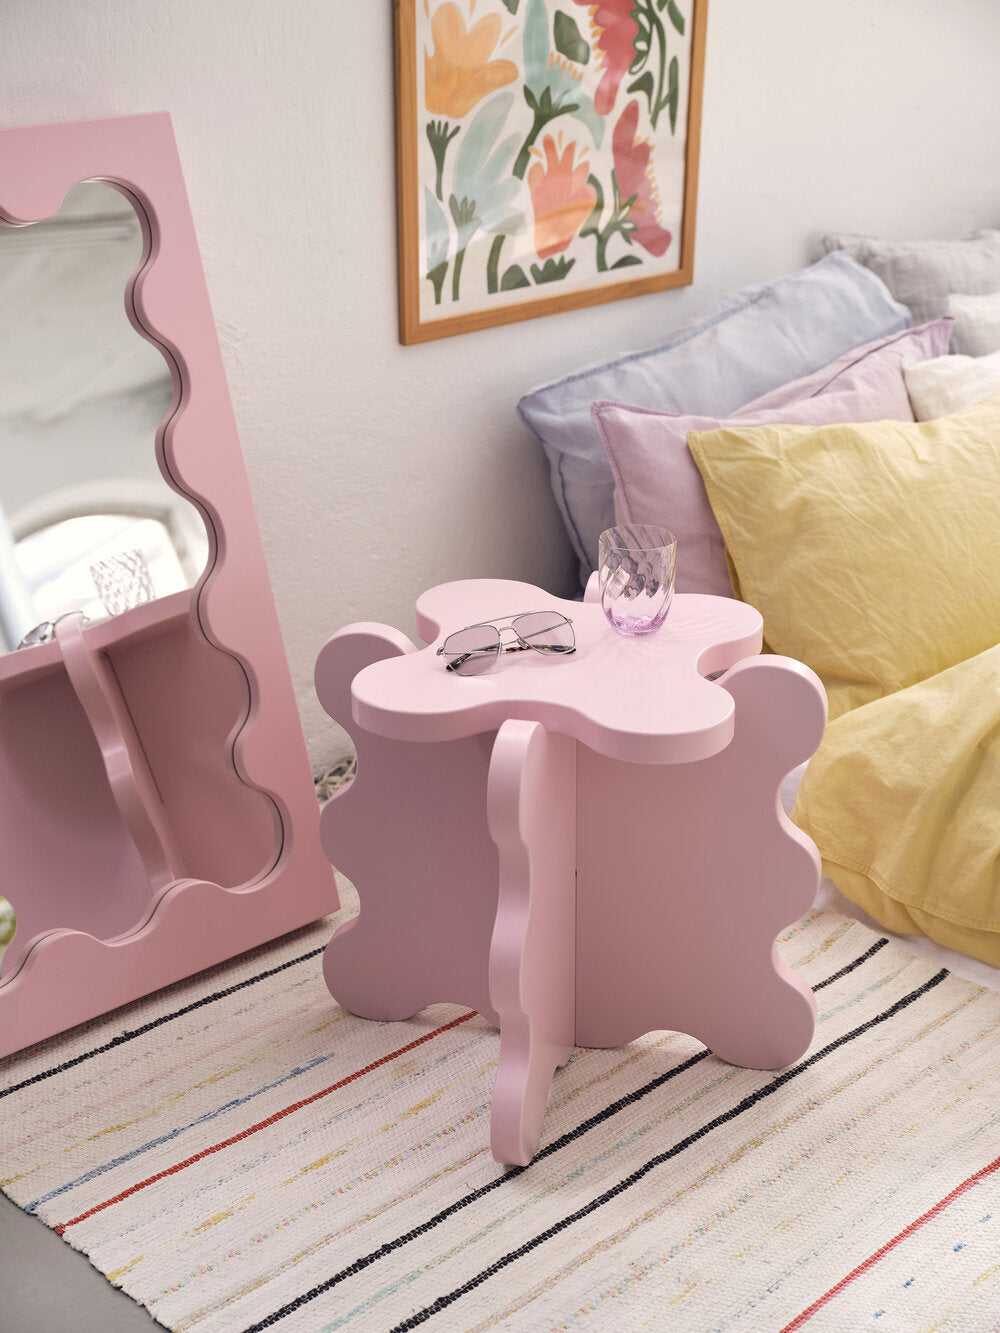 Danish pastel room furniture